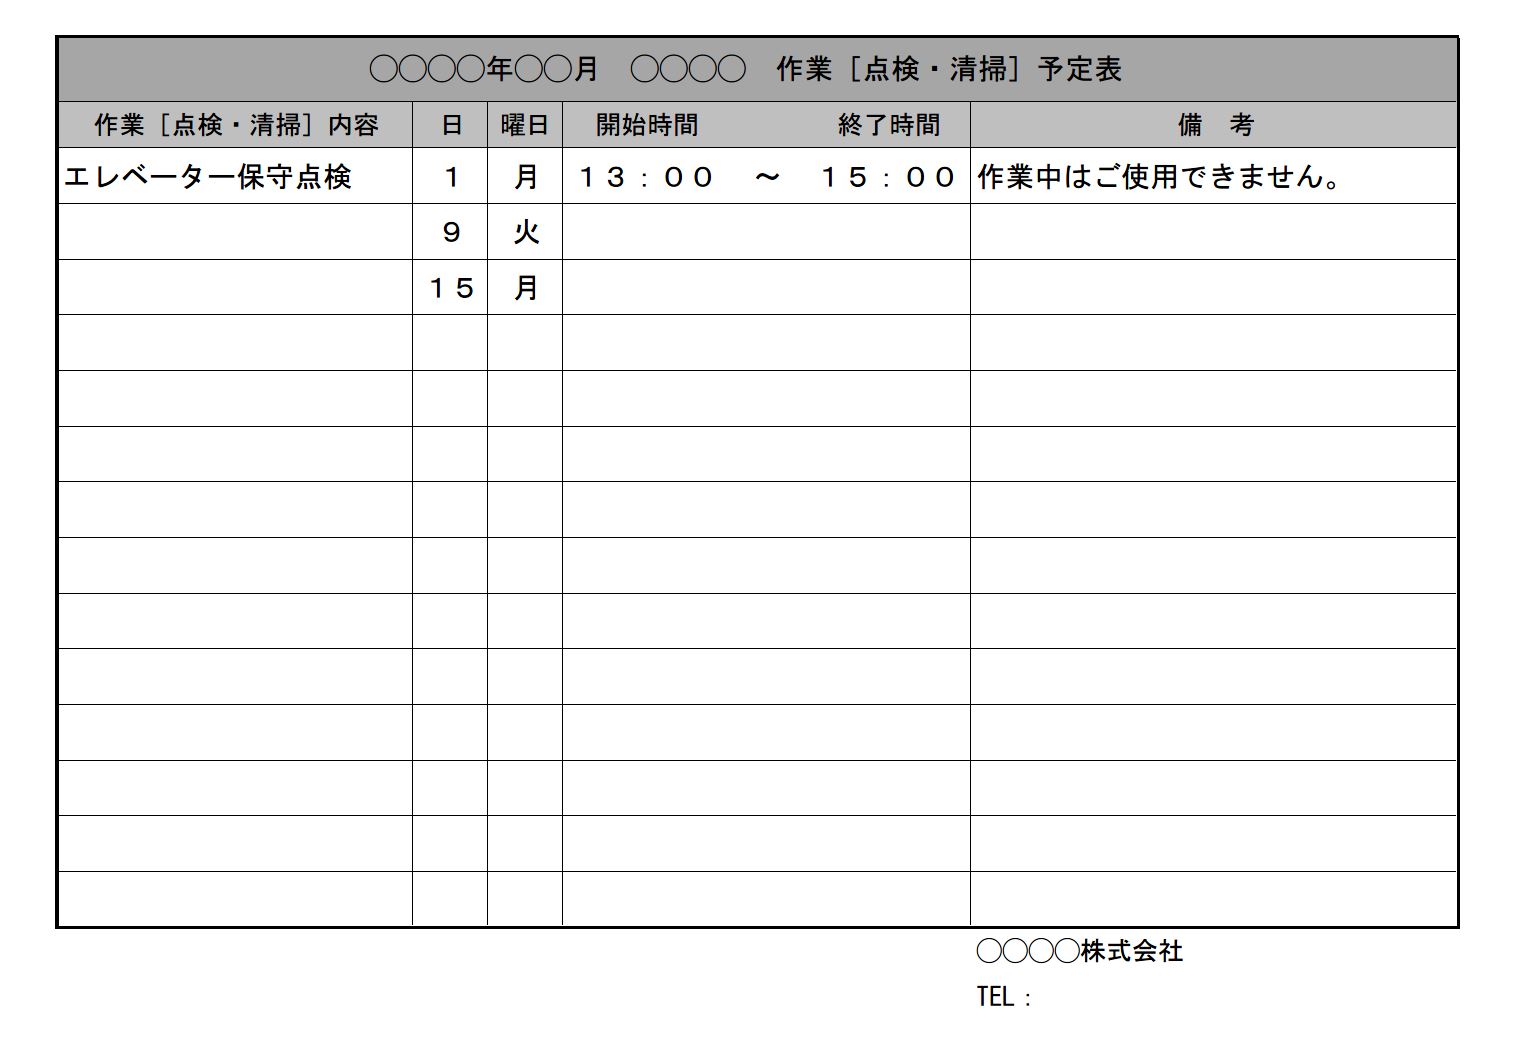 年間行事予定表 行事計画表 スケジュール表 カレンダー 活動計画表 書式 様式 フォーマット 雛形 ひな形 テンプレート 無料 ダウンロード エクセル Excel 04 Xls形式 文書 テンプレートの無料ダウンロード